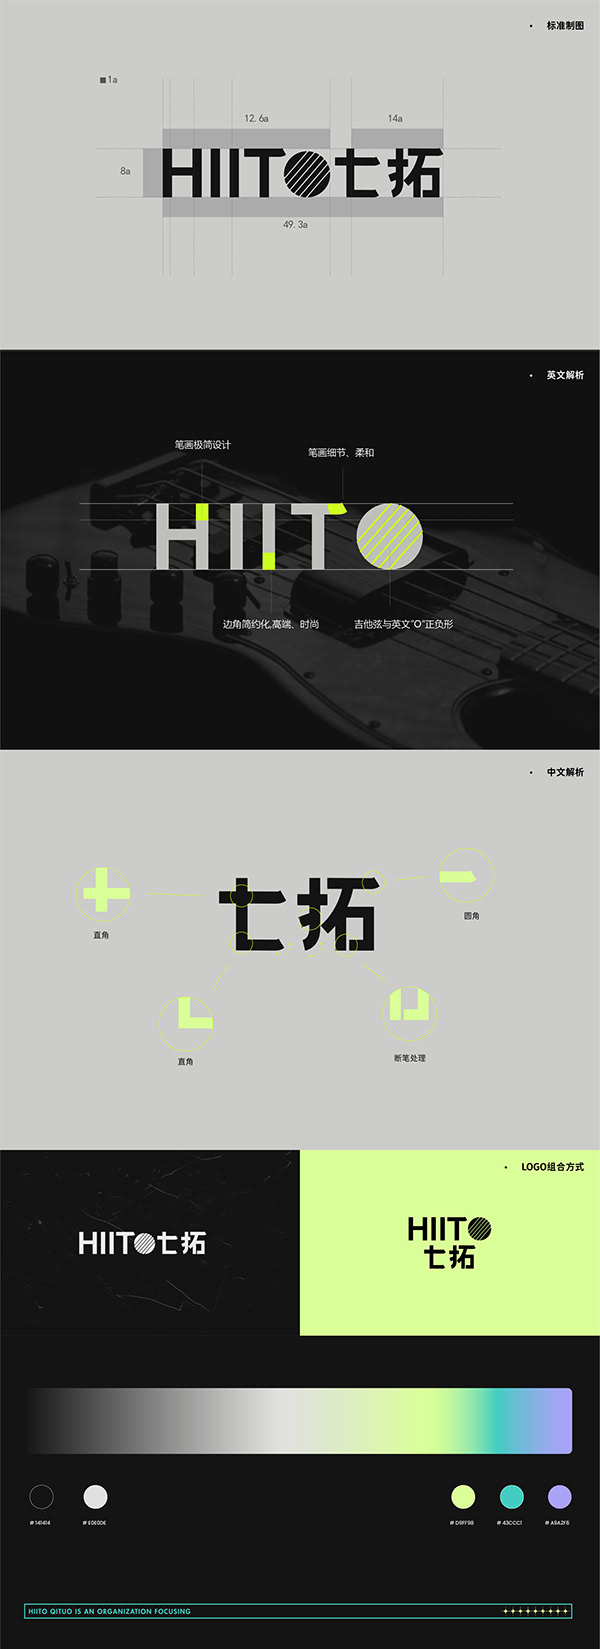 上海《七拓》吉他品牌设计及网站开发设计